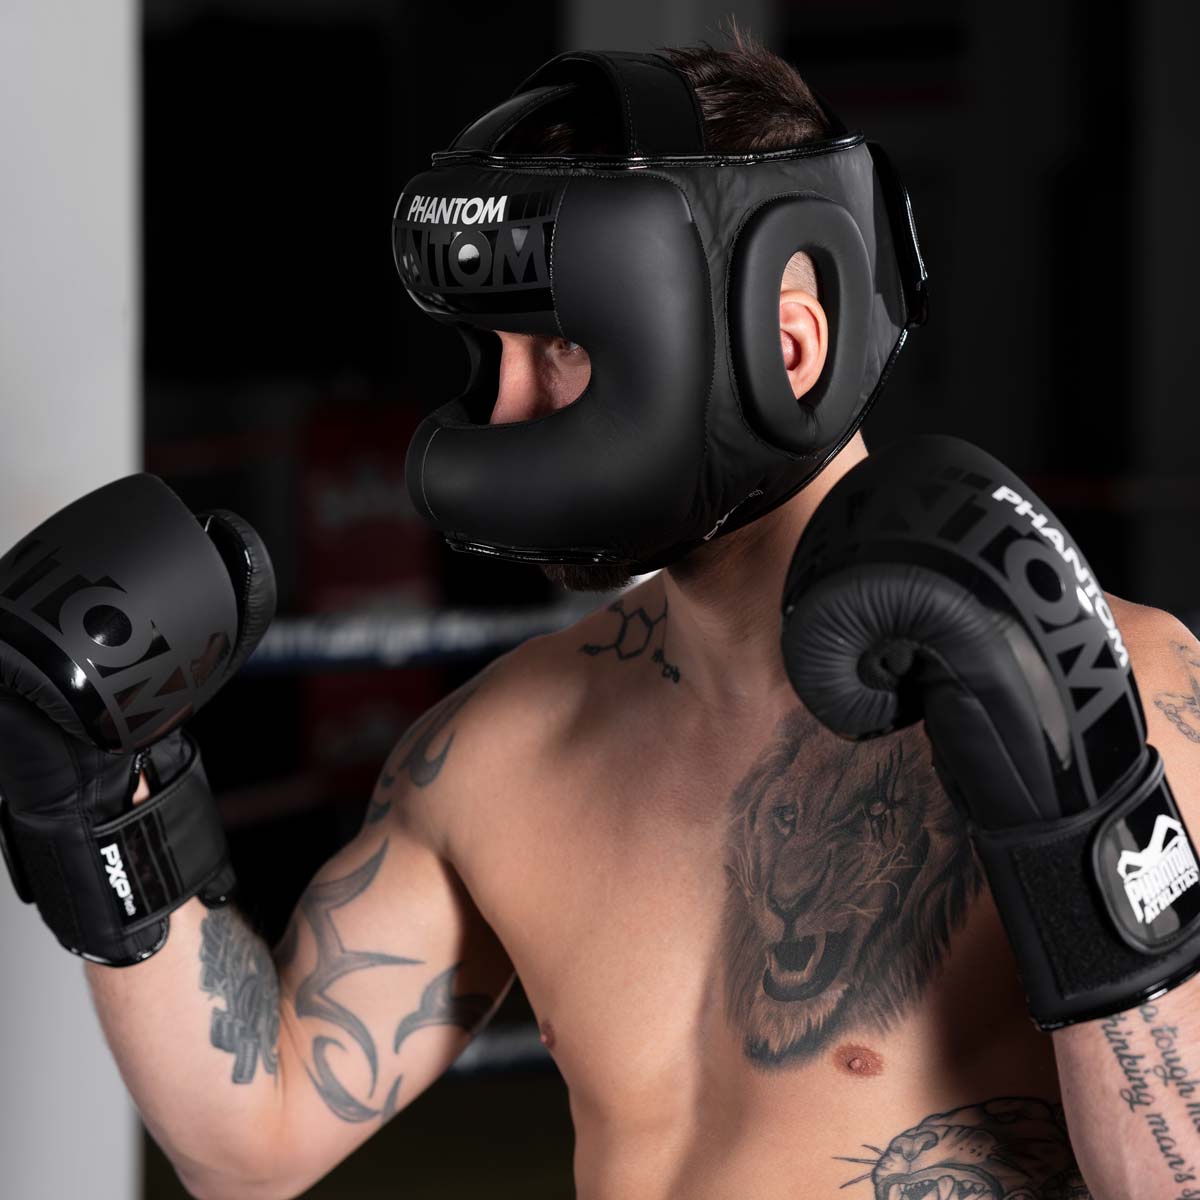 Muay Thai Fighter mit dem Phantom APEX Face Saver Kopfschutz und den Phantom Apex Boxhandschuhen